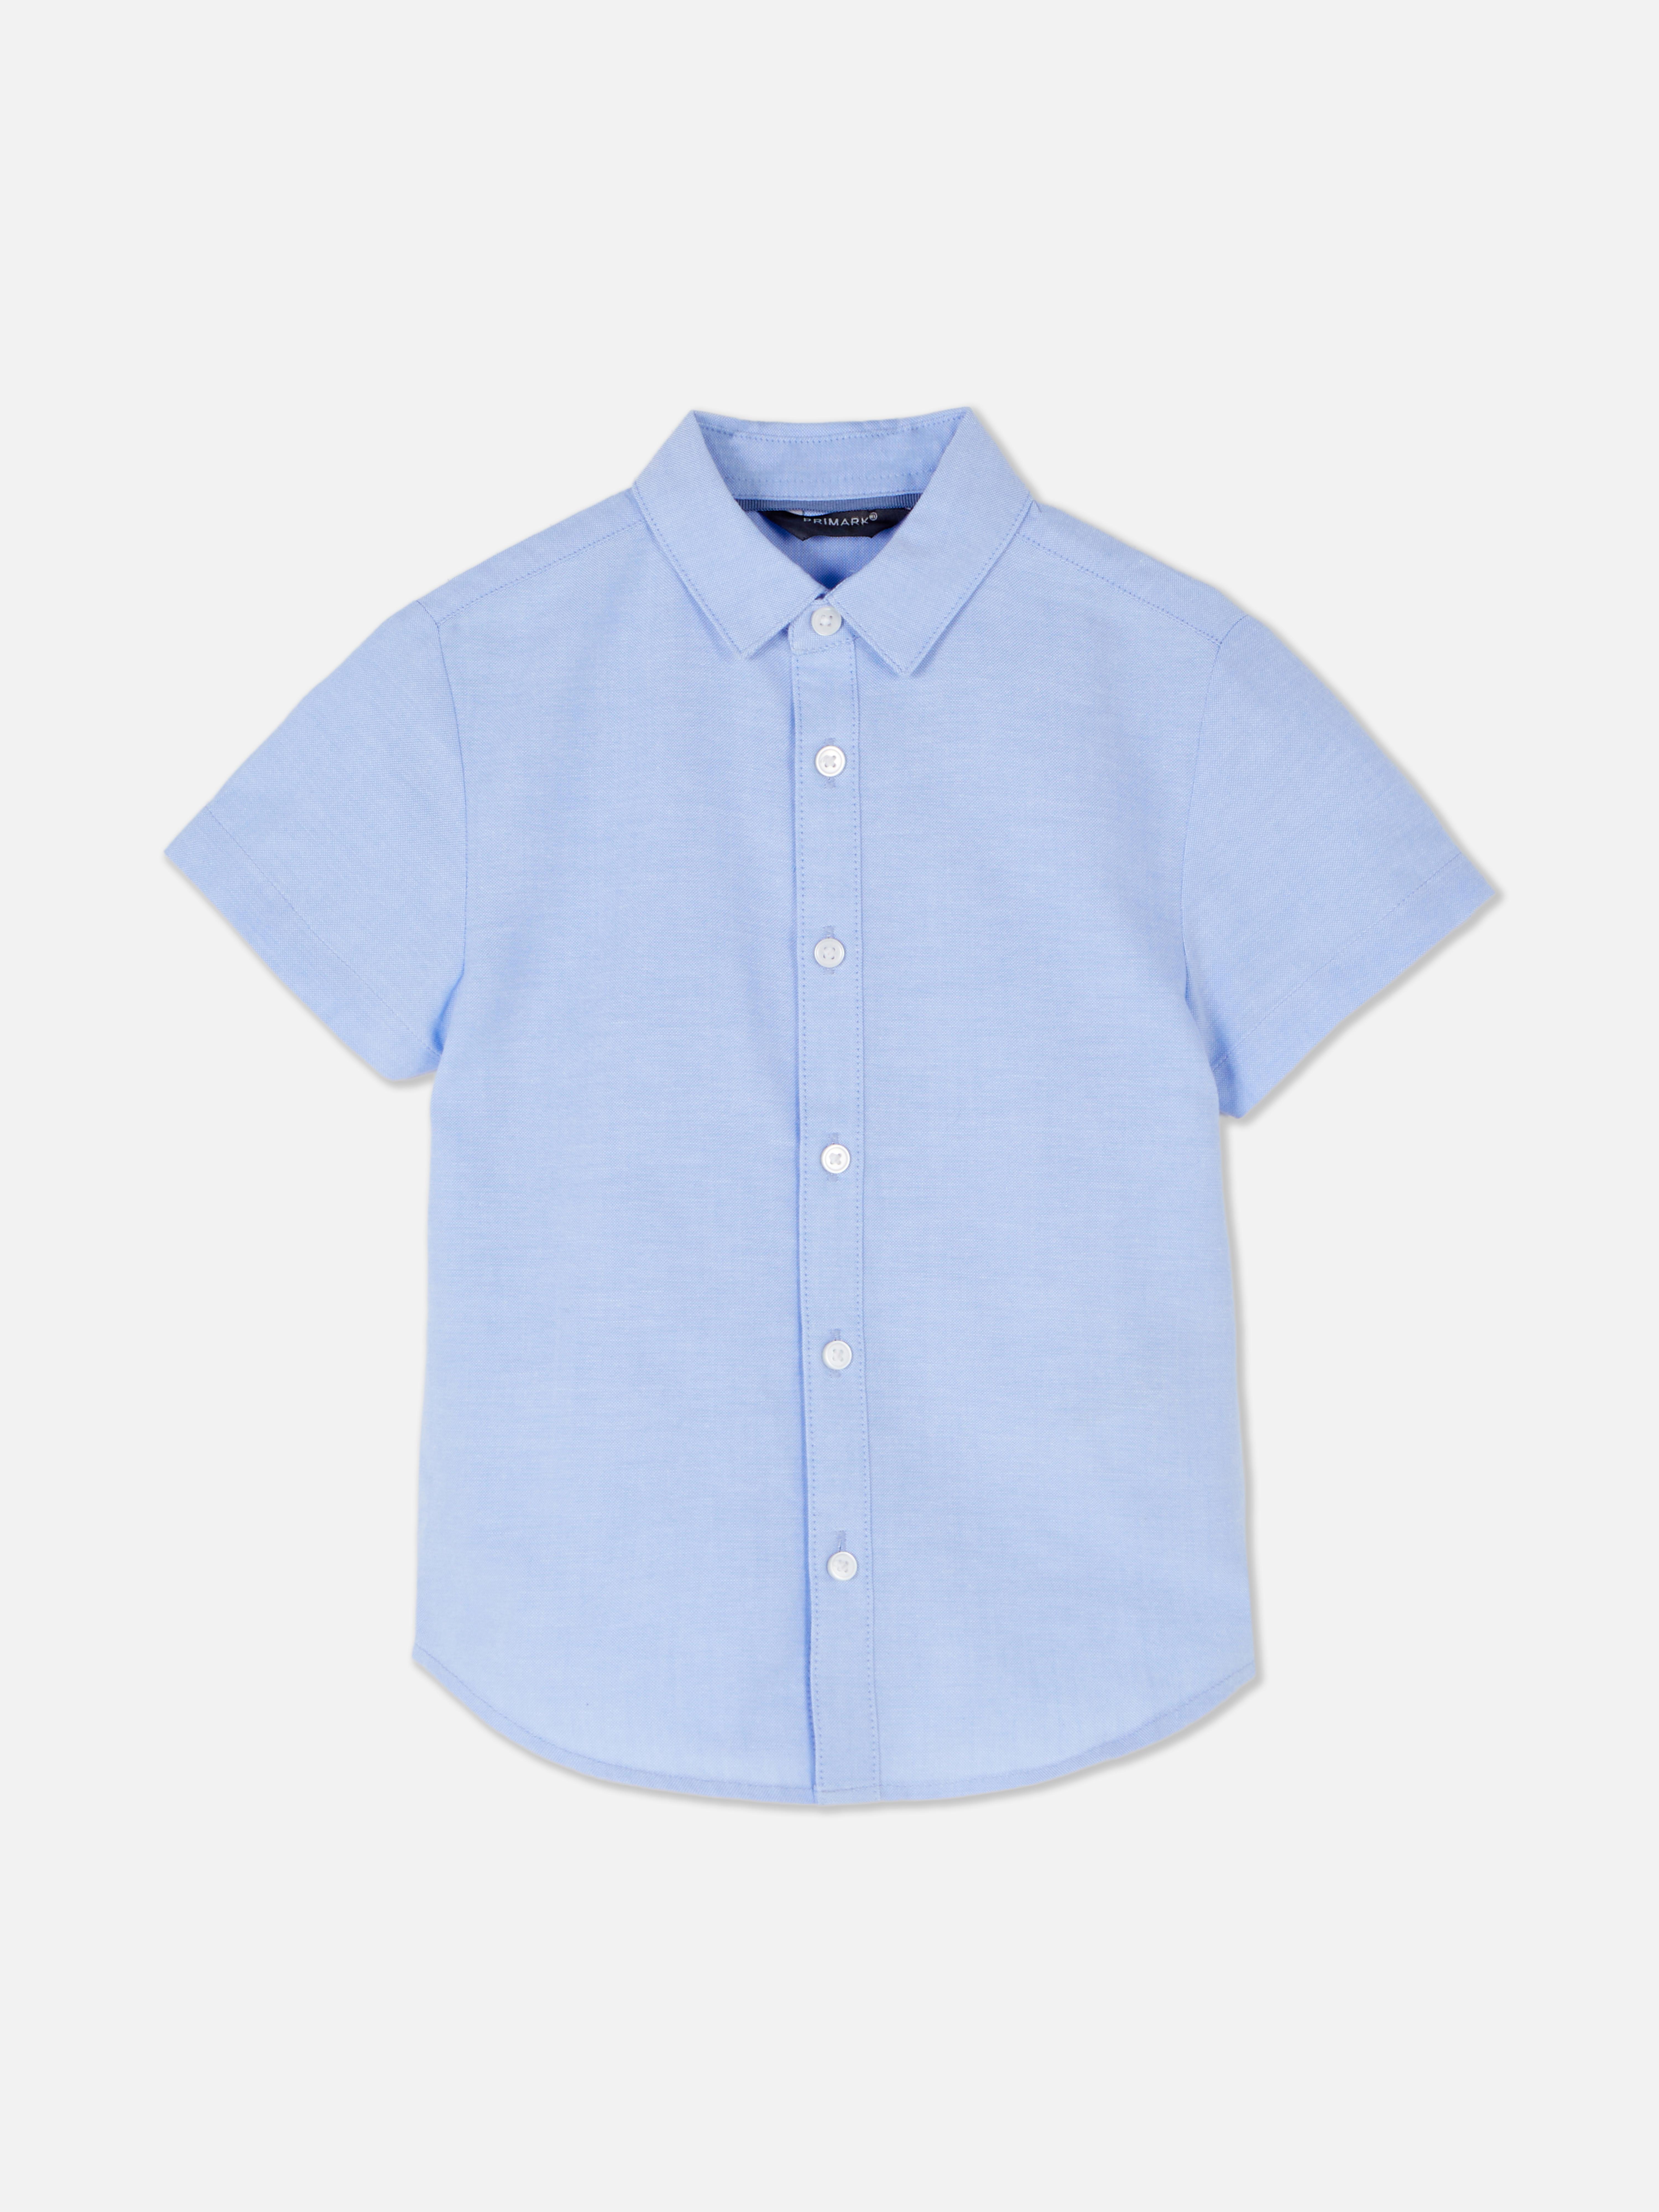 Blue Short Sleeve Built In Bra T-Shirt Dress